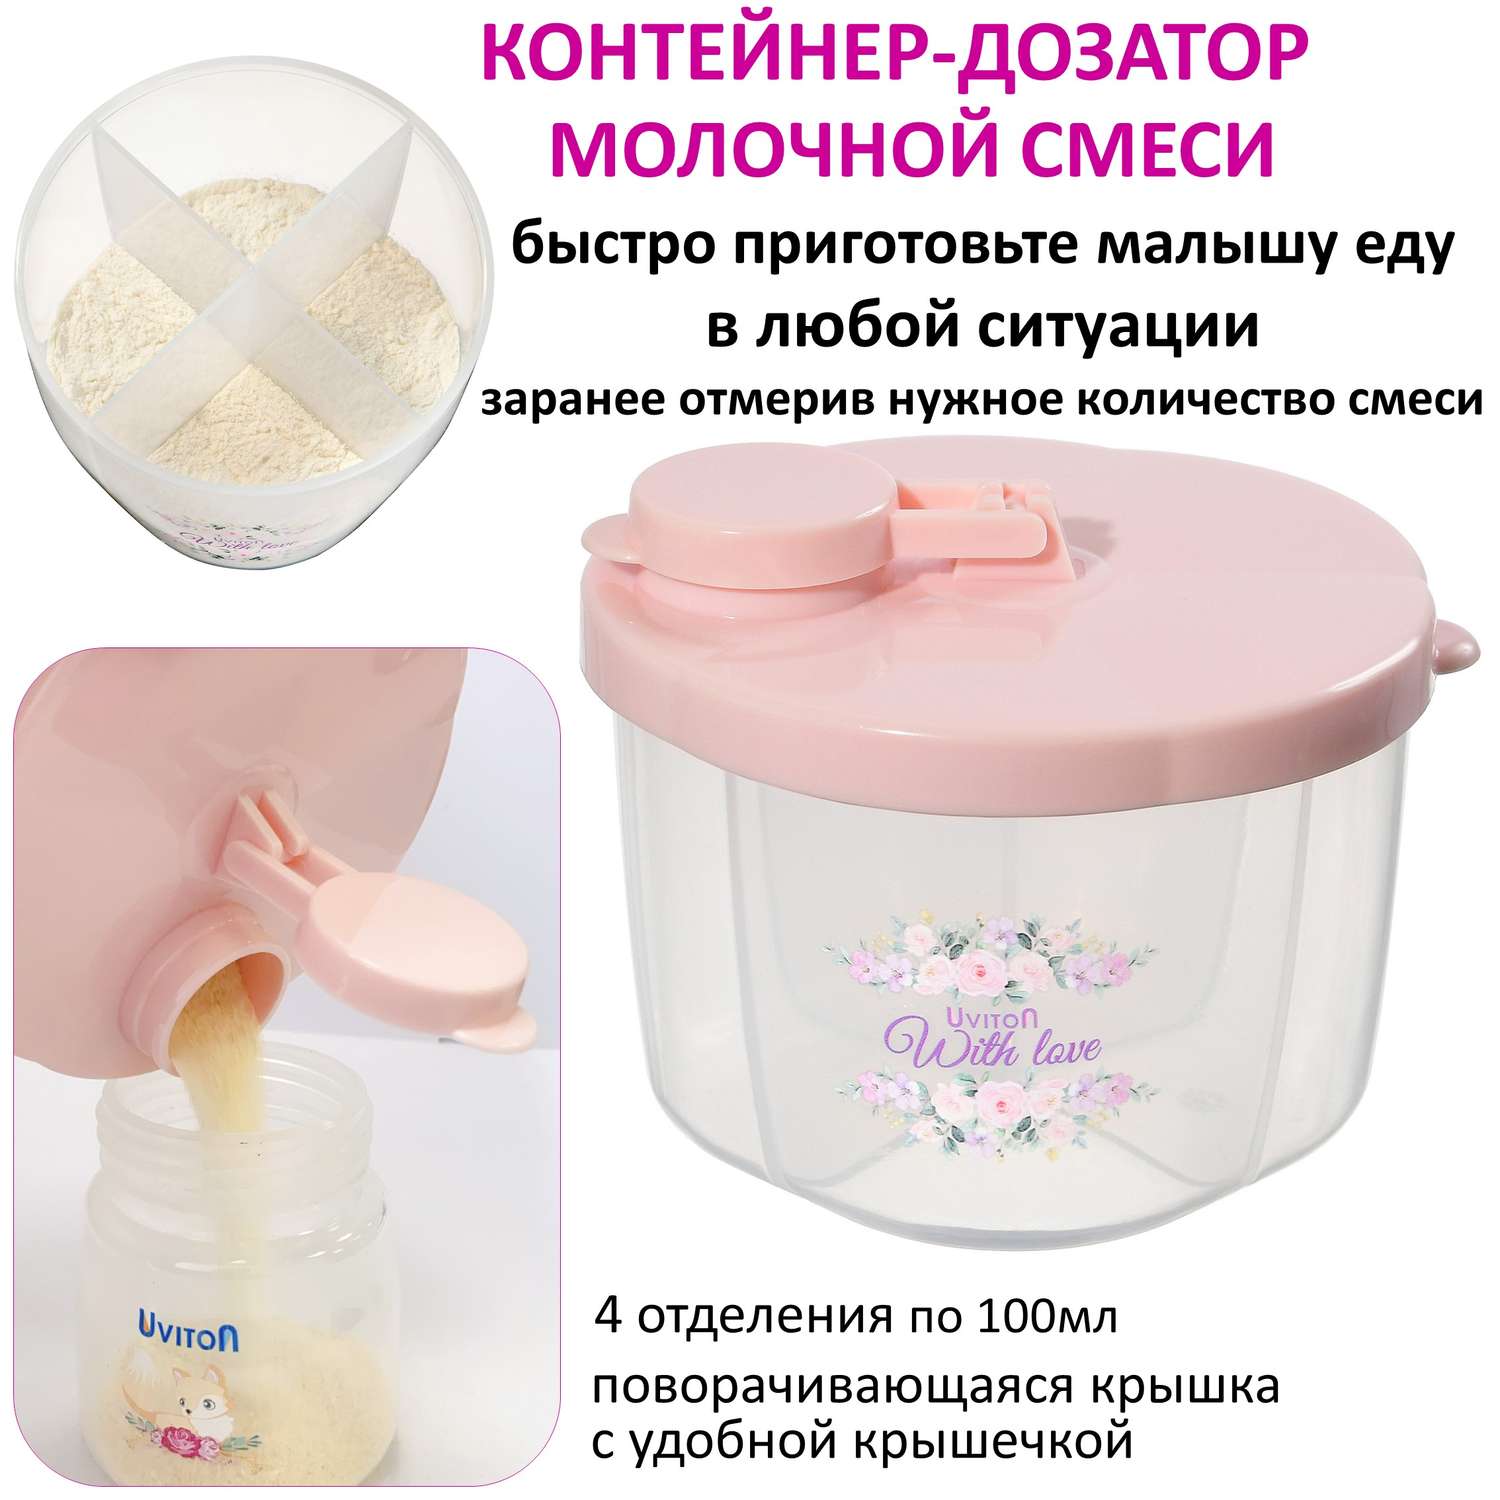 Дозатор молочной смеси. Uviton для молочной смеси 4 отделения Арт.0609 розовый - фото 2